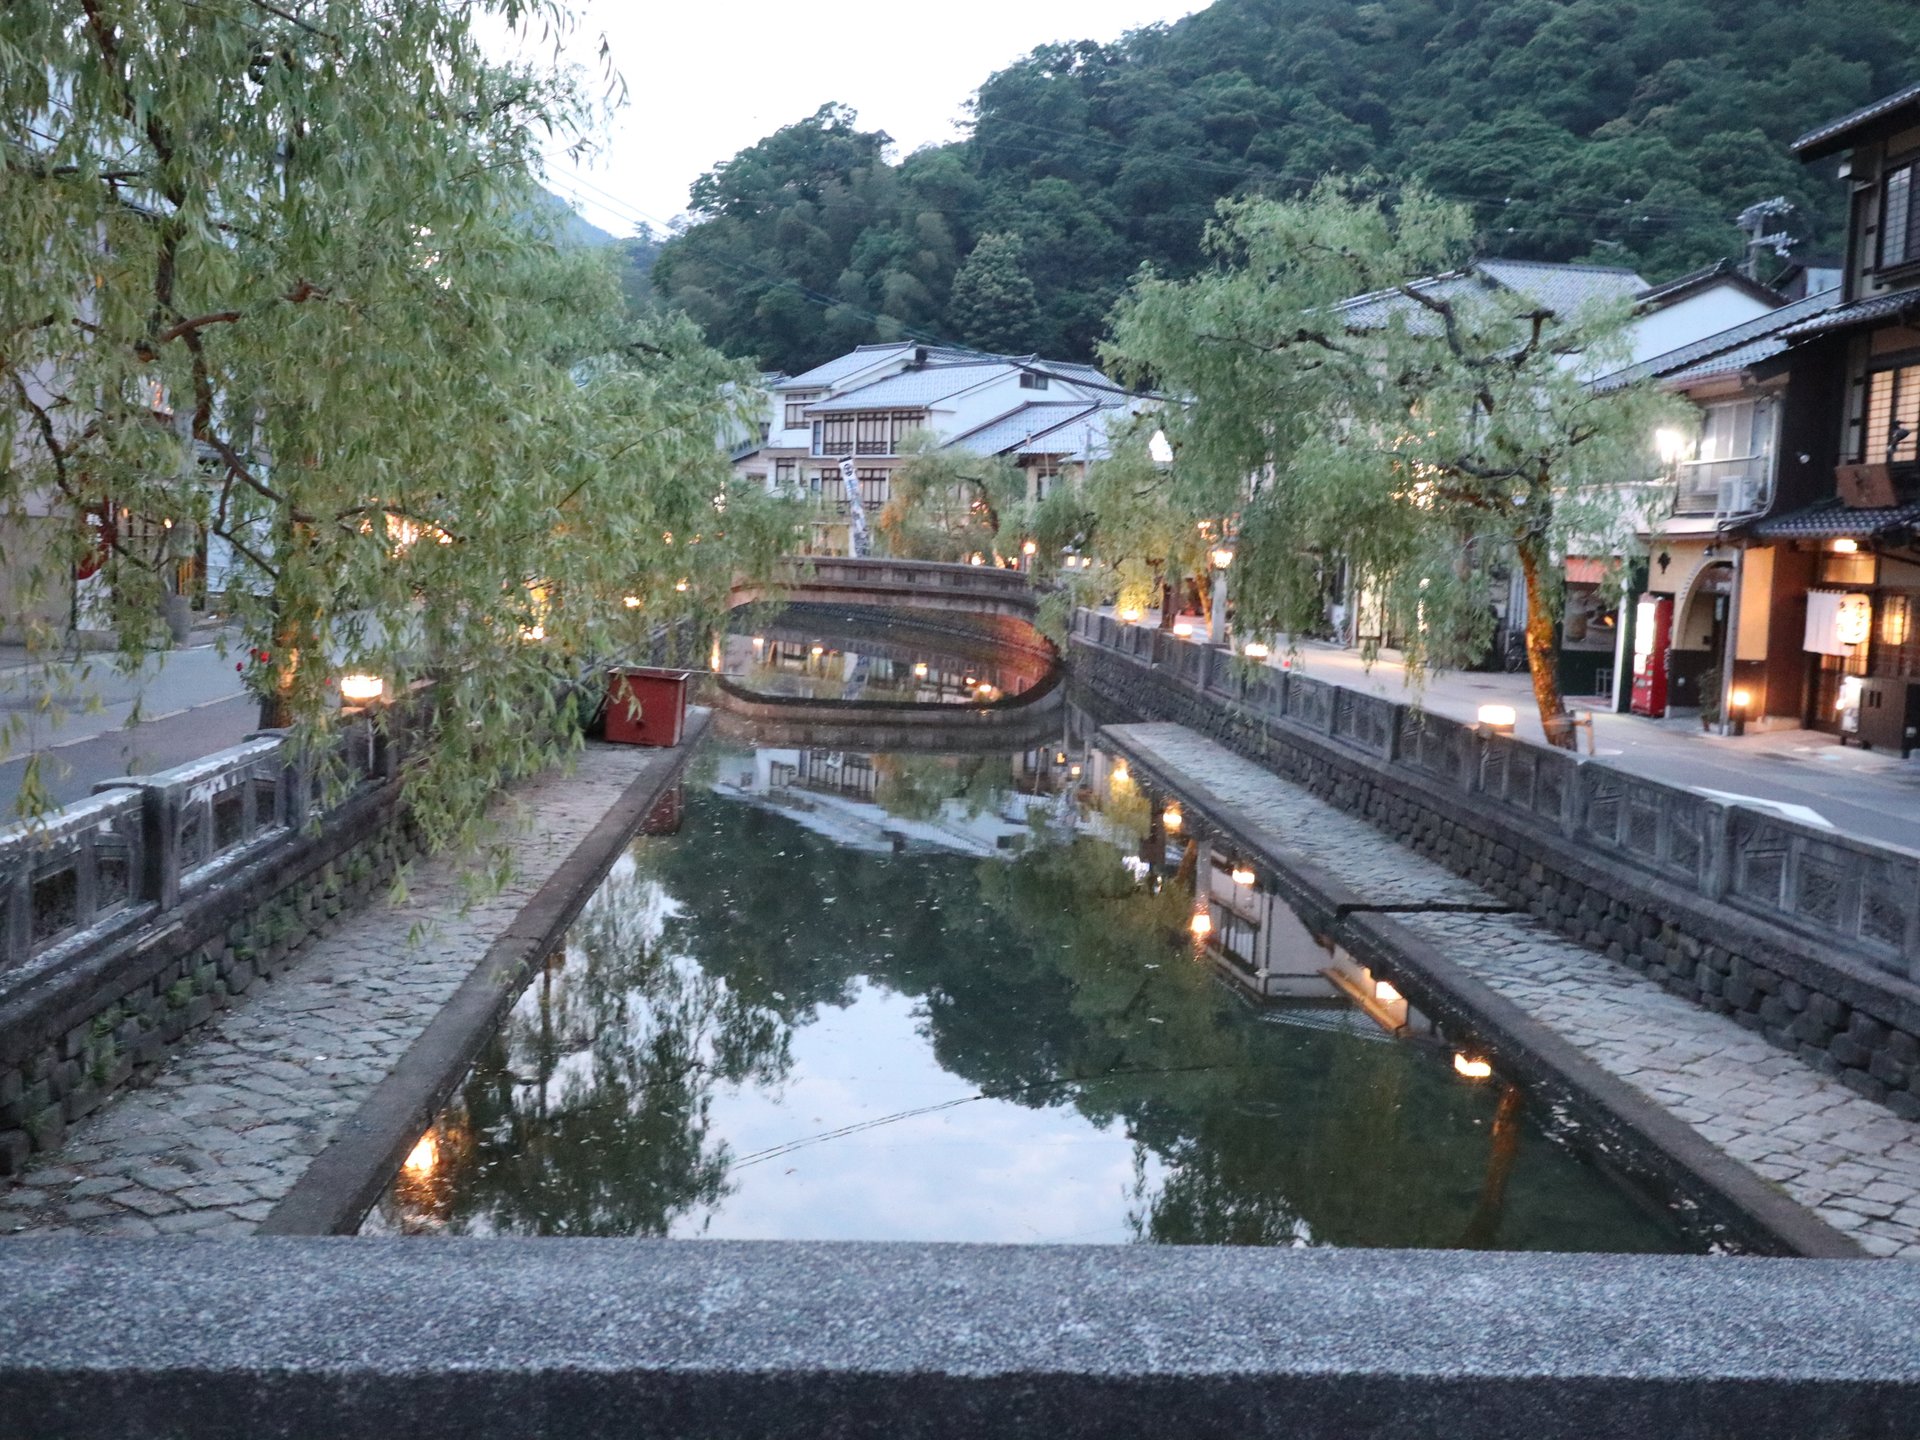 兵庫県・城崎温泉を訪れて、カニや魚介類を味わい、７つの温泉をめぐる